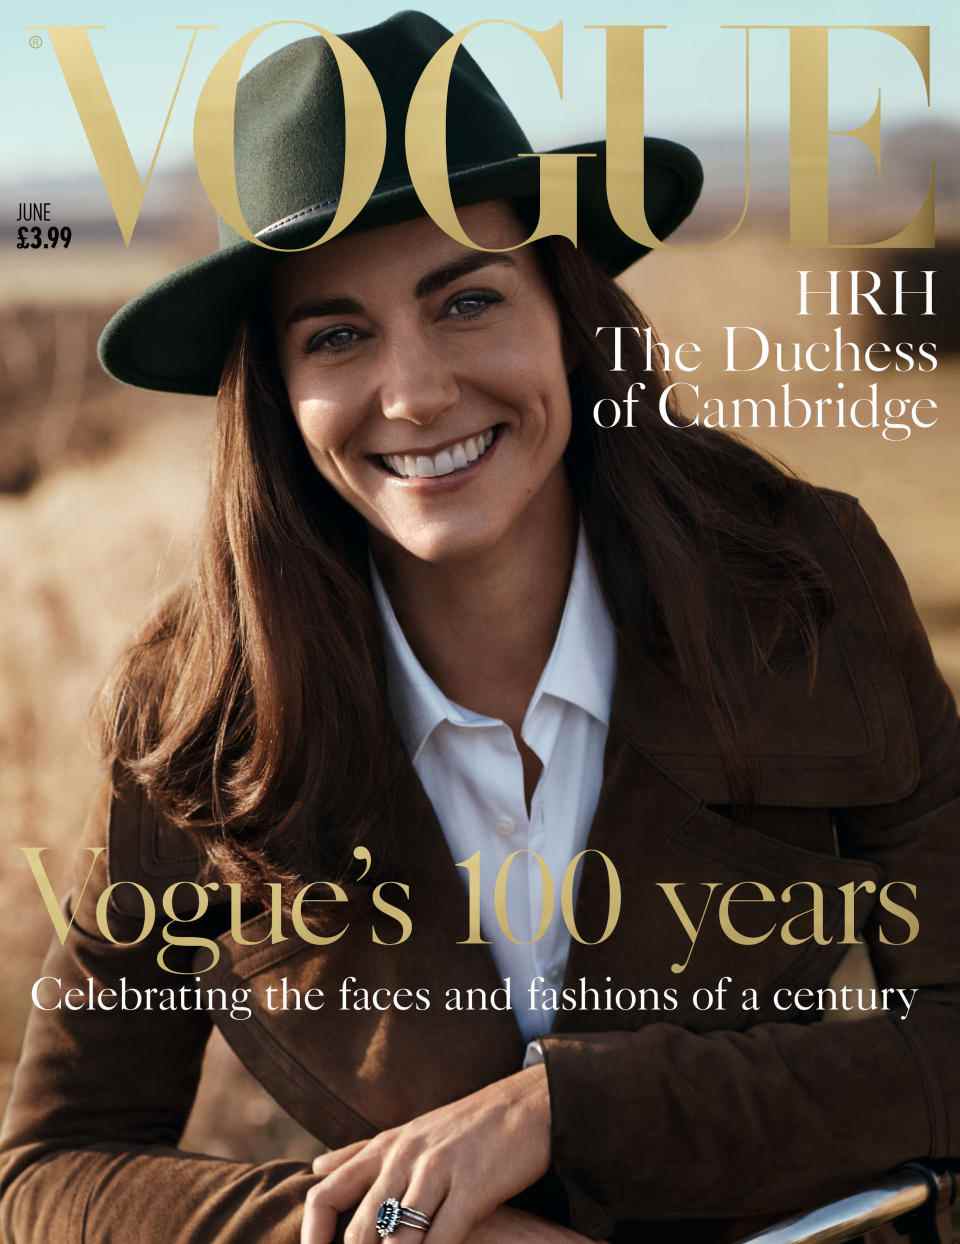 Photo non datée publiée par Vogue de leur couverture qui présente la duchesse de Cambridge pour marquer leur numéro du centenaire.